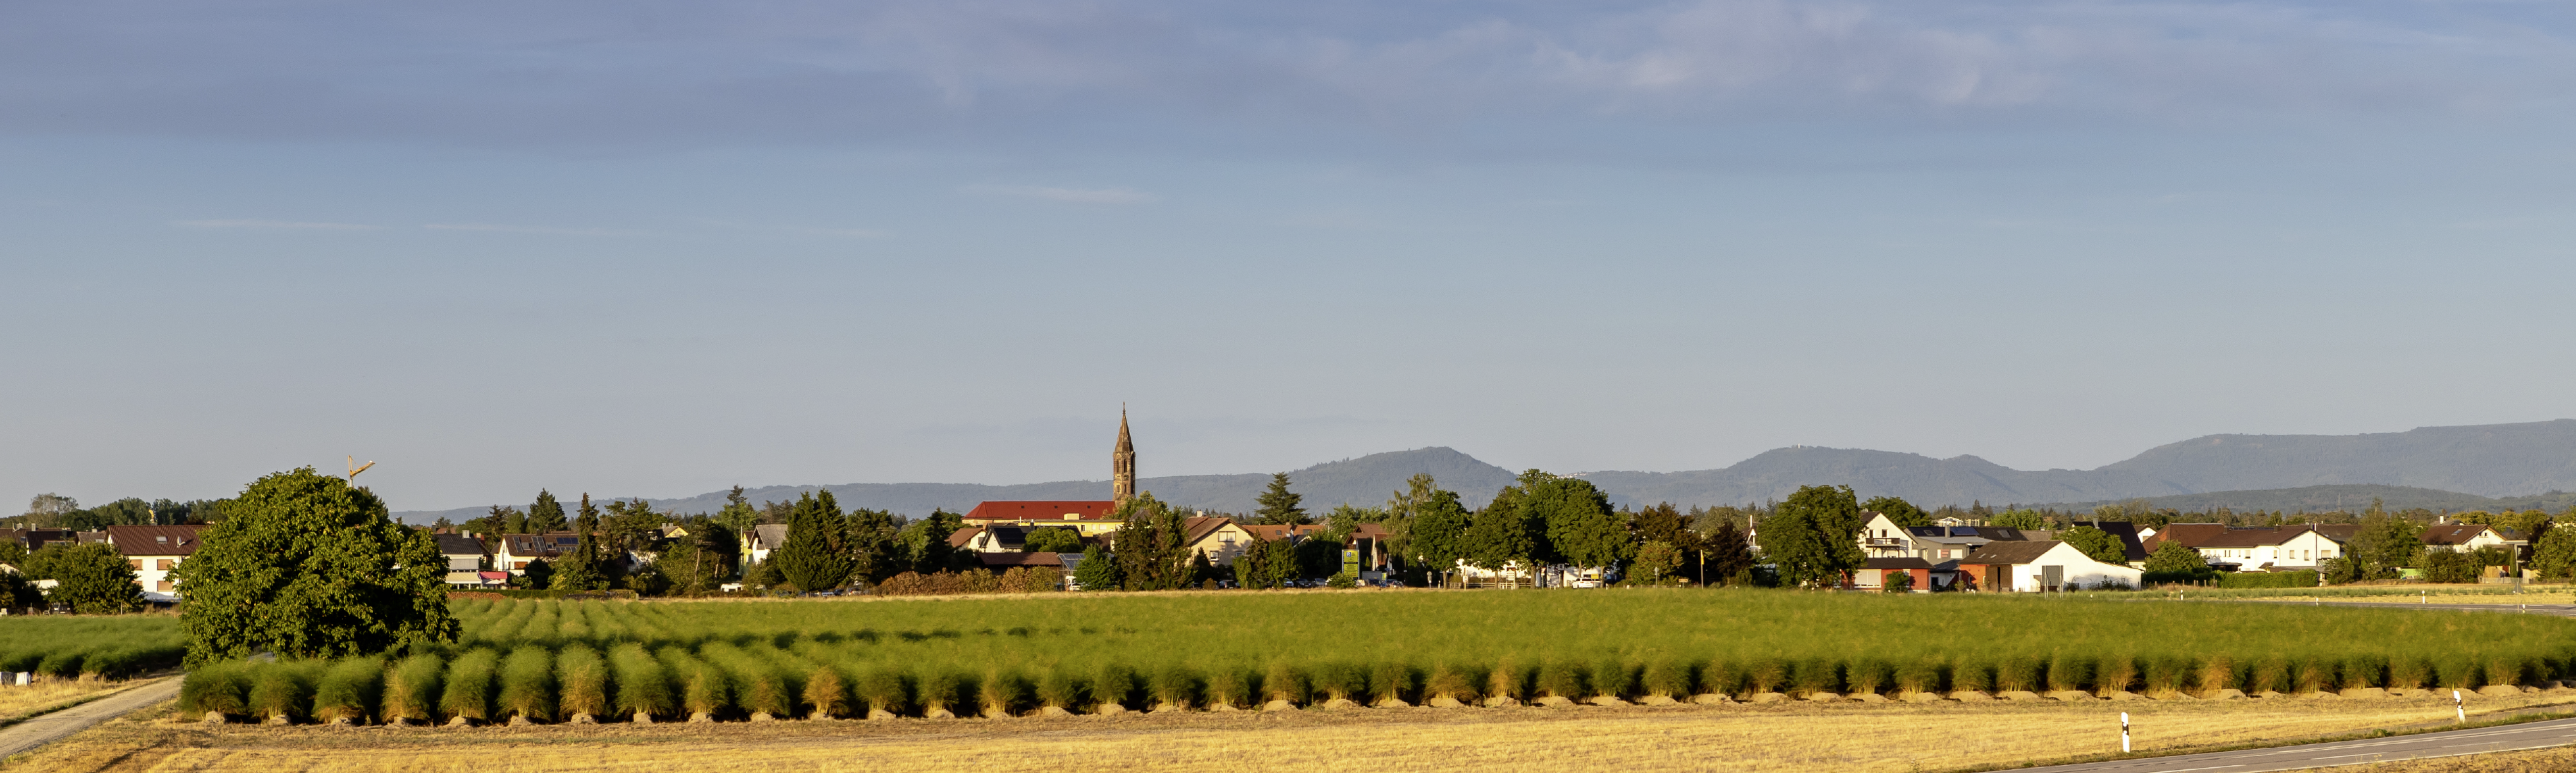 Blick auf Spargelfelder mit Hügelsheim im Hintergrund